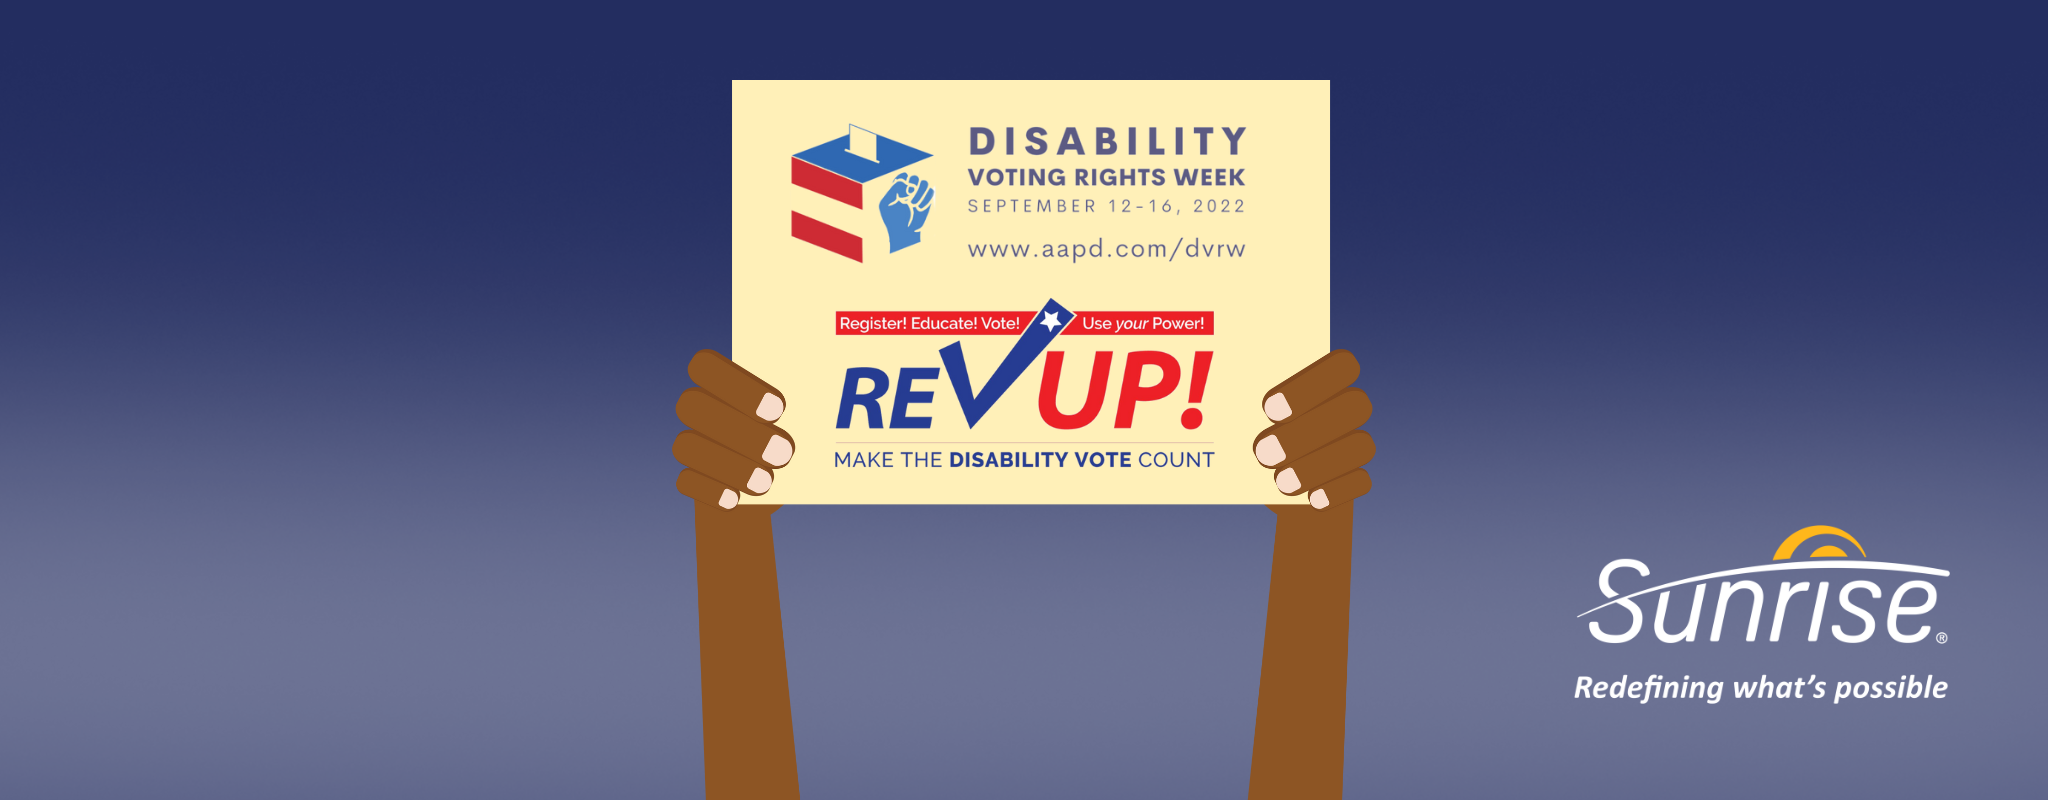 Semaine du droit de vote des personnes handicapées 2022